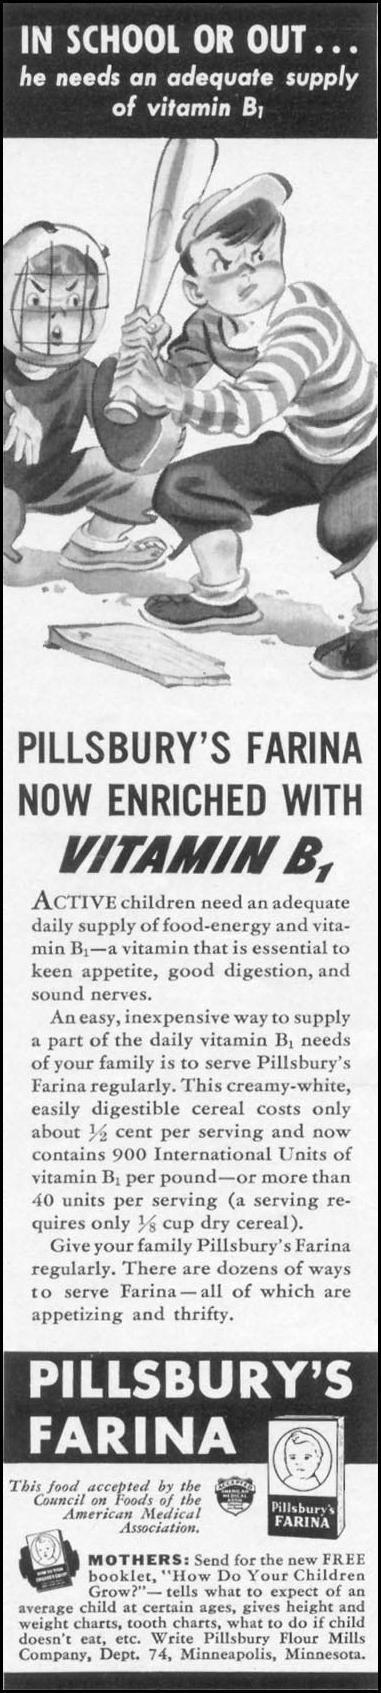 PILLSBURY'S FARINA
WOMAN'S DAY
04/01/1941
p. 50